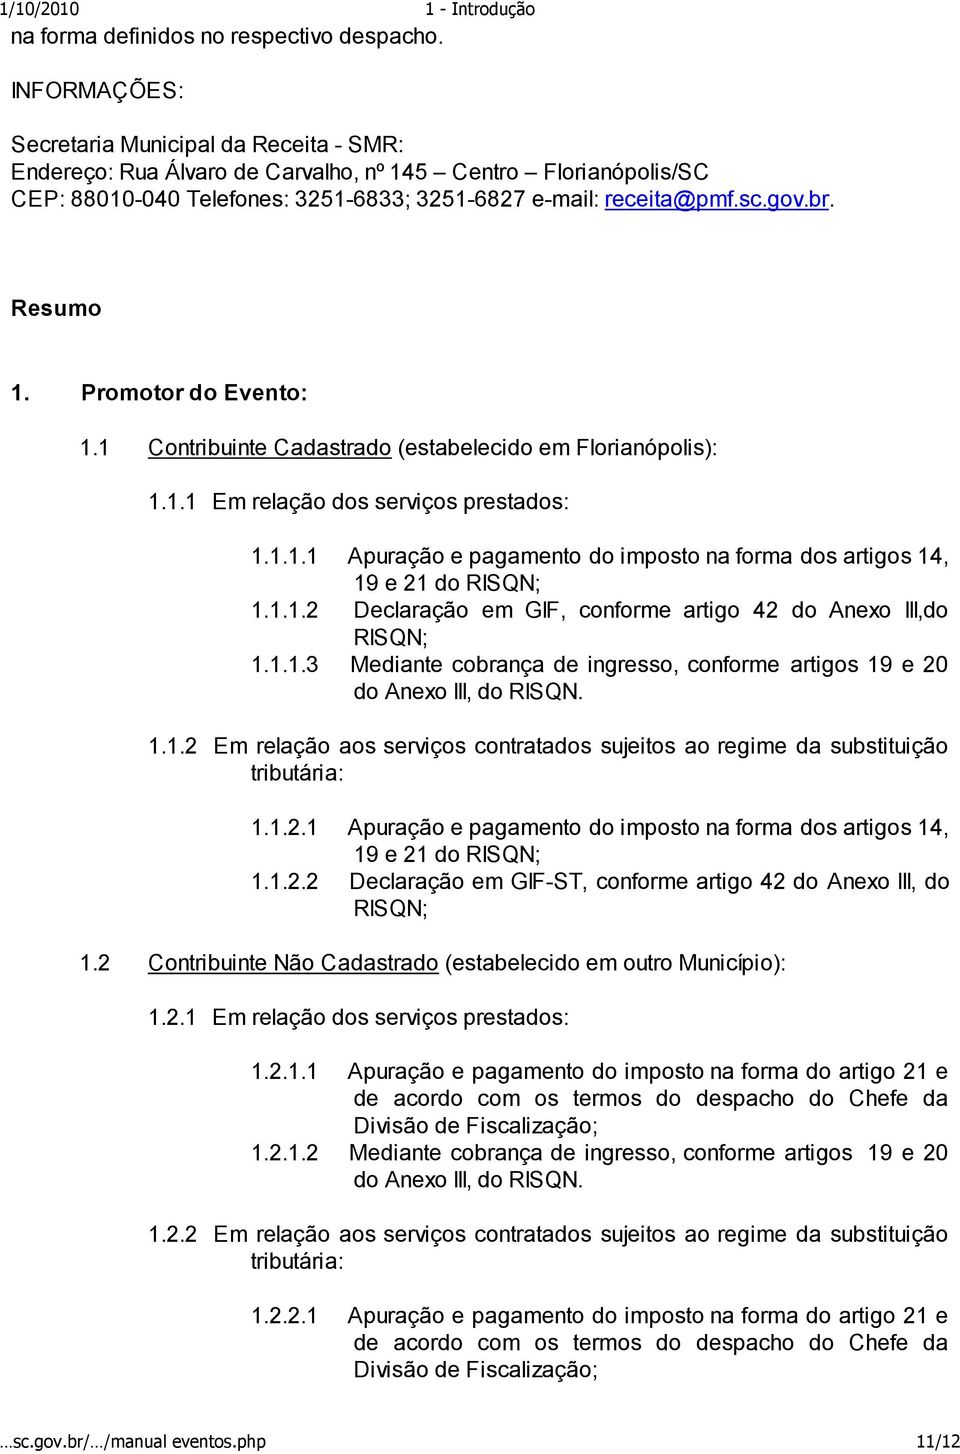 Resumo 1. Promotor do Evento: 1.1 Contribuinte Cadastrado (estabelecido em Florianópolis): 1.1.1 Em relação dos serviços prestados: 1.1.1.1 Apuração e pagamento do imposto na forma dos artigos 14, 19 e 21 do RISQN; 1.